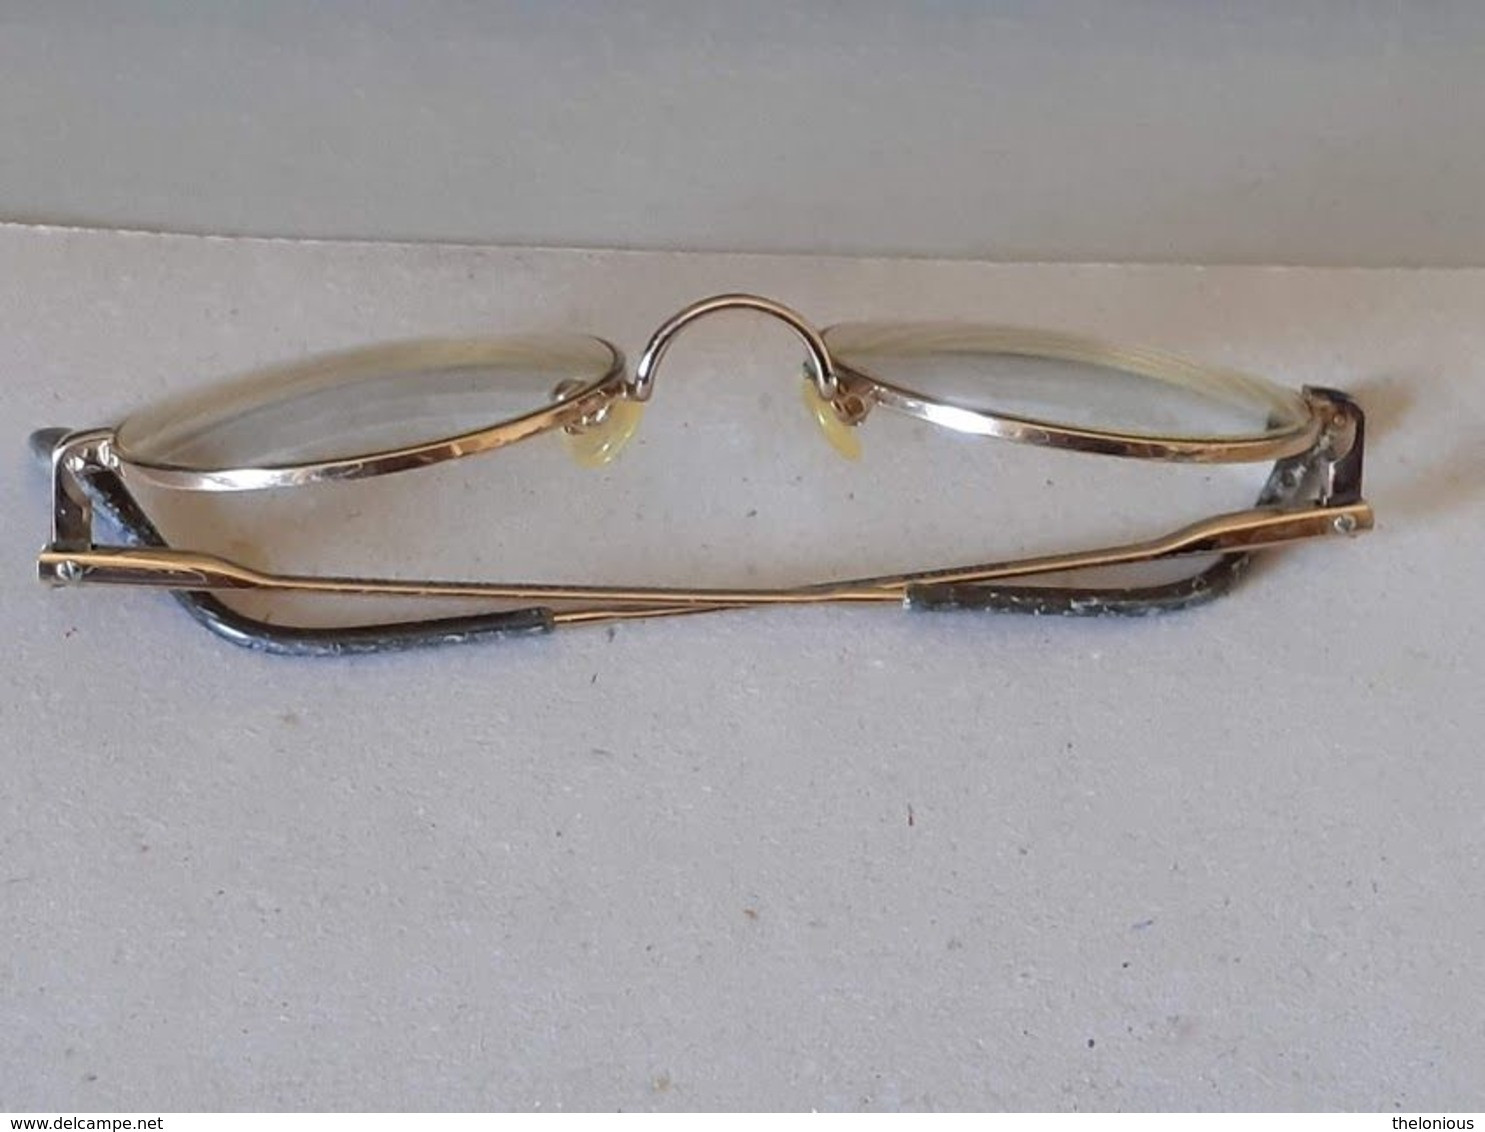 * Vintage Montatura Occhiali Tondi - Le Lenti Presenti Sono Graduate - Glasses